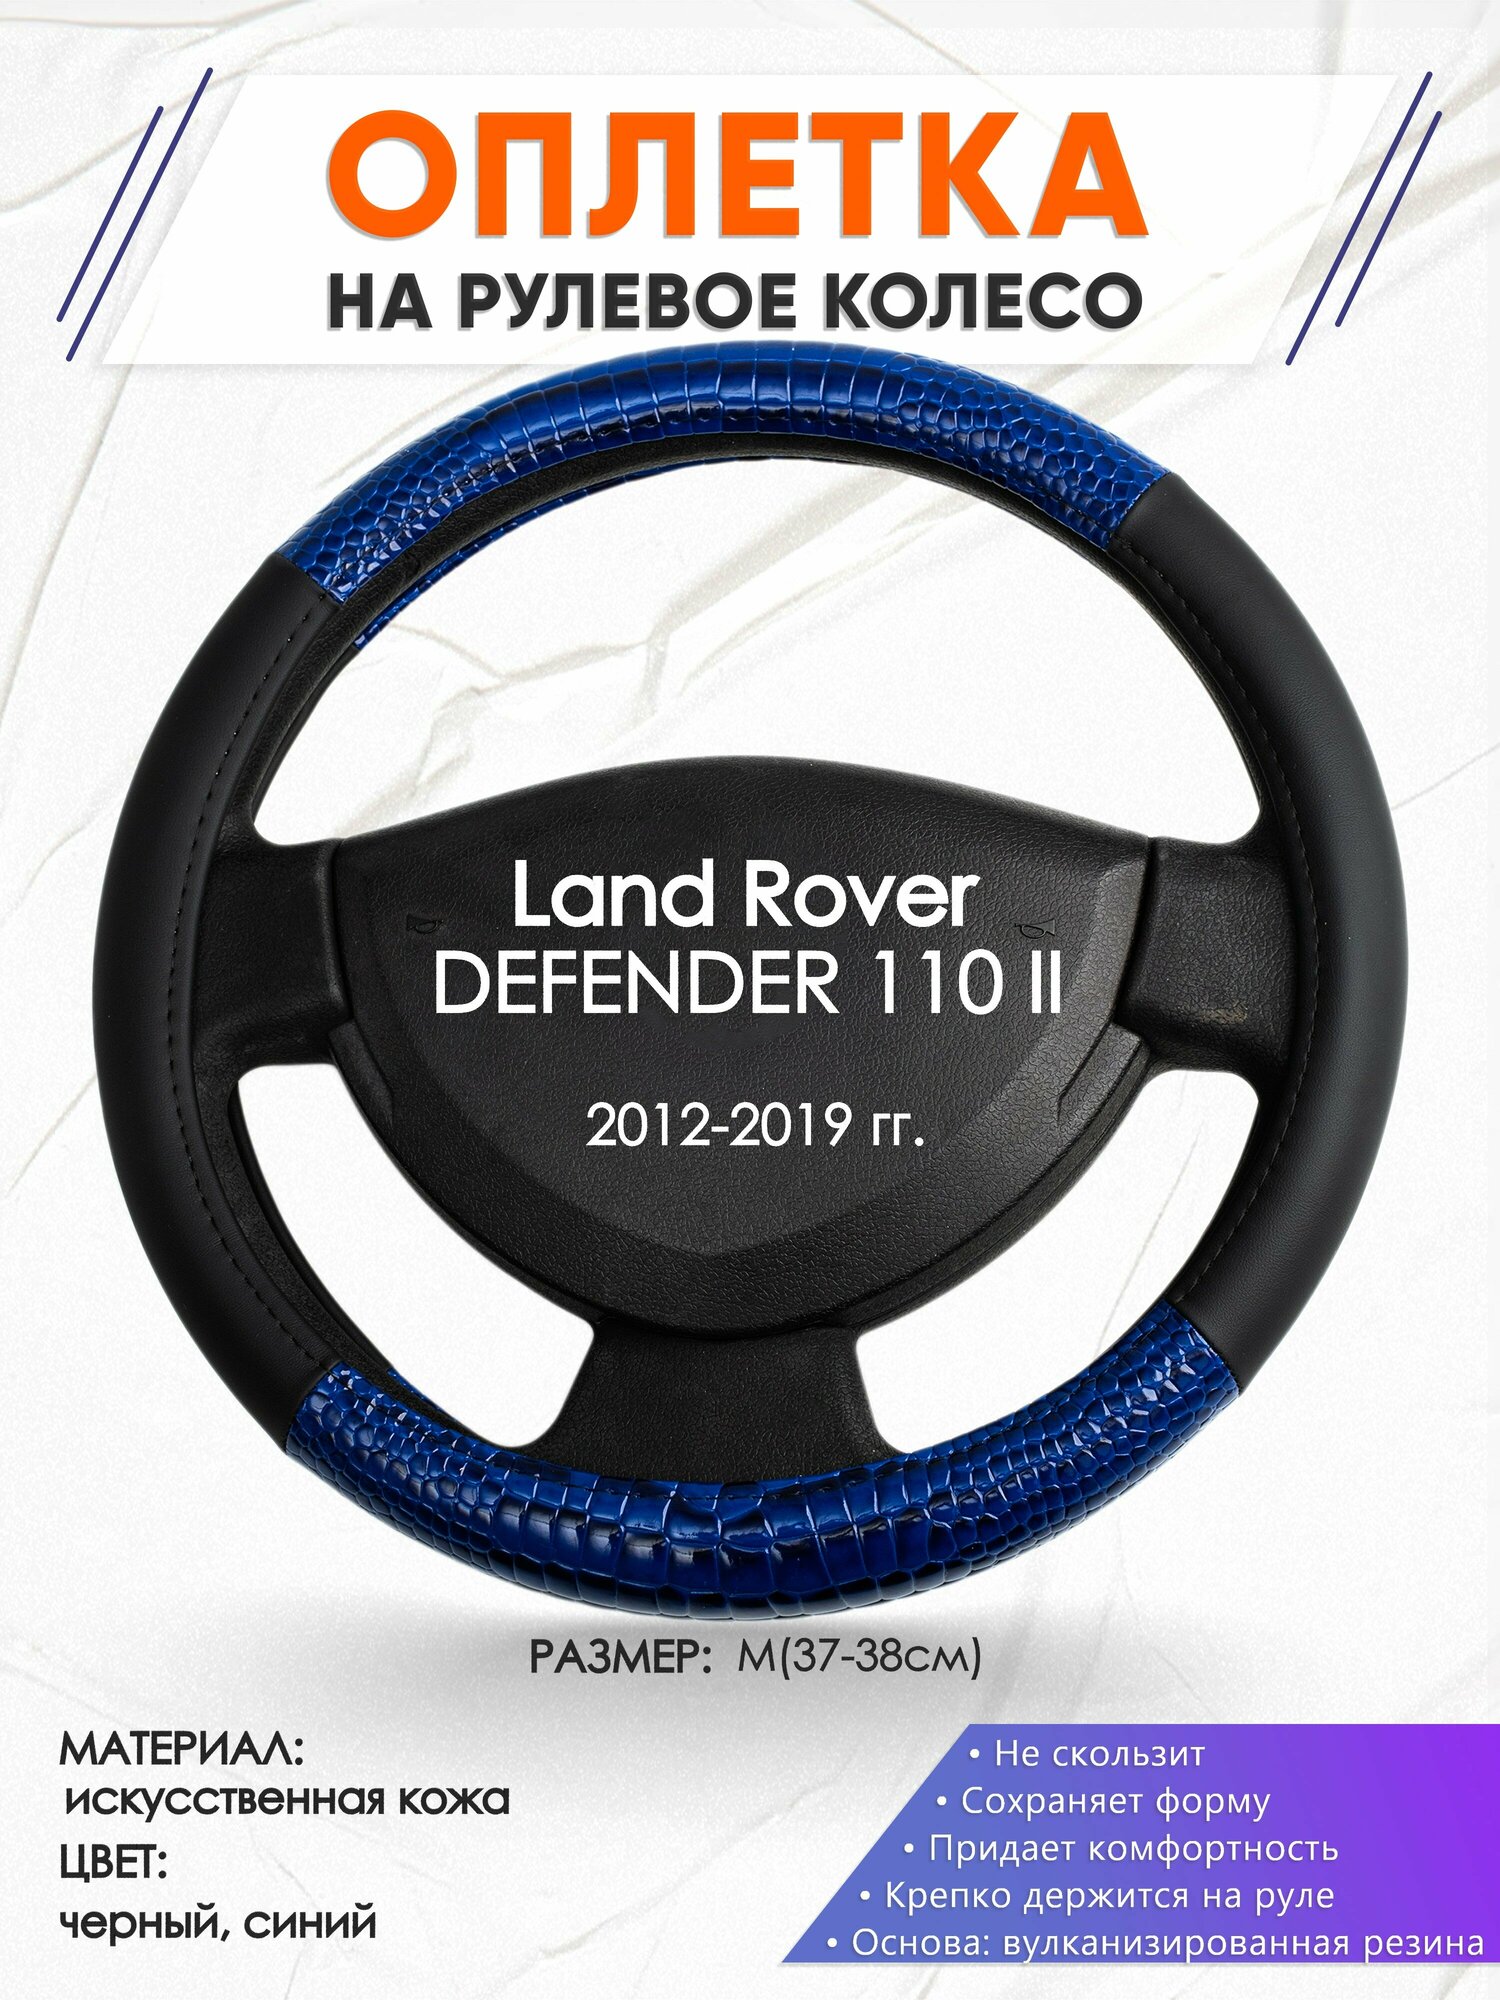 Оплетка наруль для Land Rover DEFENDER 110 2(Ленд Ровер Дефендер 110) 2012-2019 годов выпуска, размер M(37-38см), Искусственная кожа 82